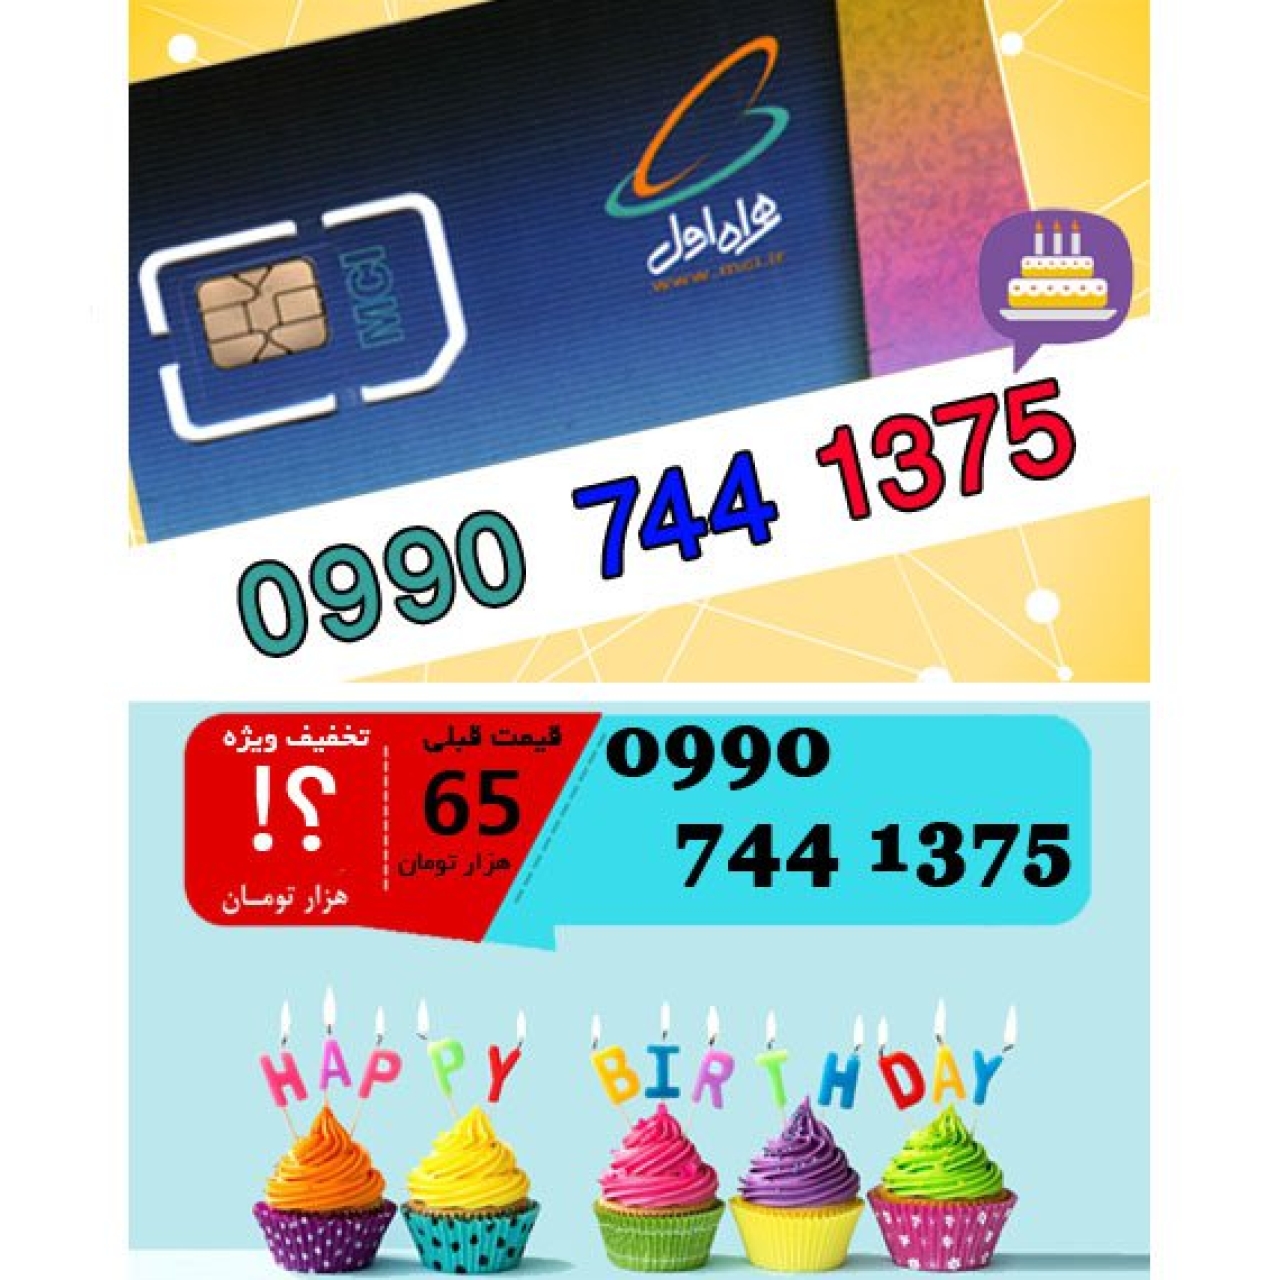 سیم کارت اعتباری همراه اول 09907441375 تاریخ تولد